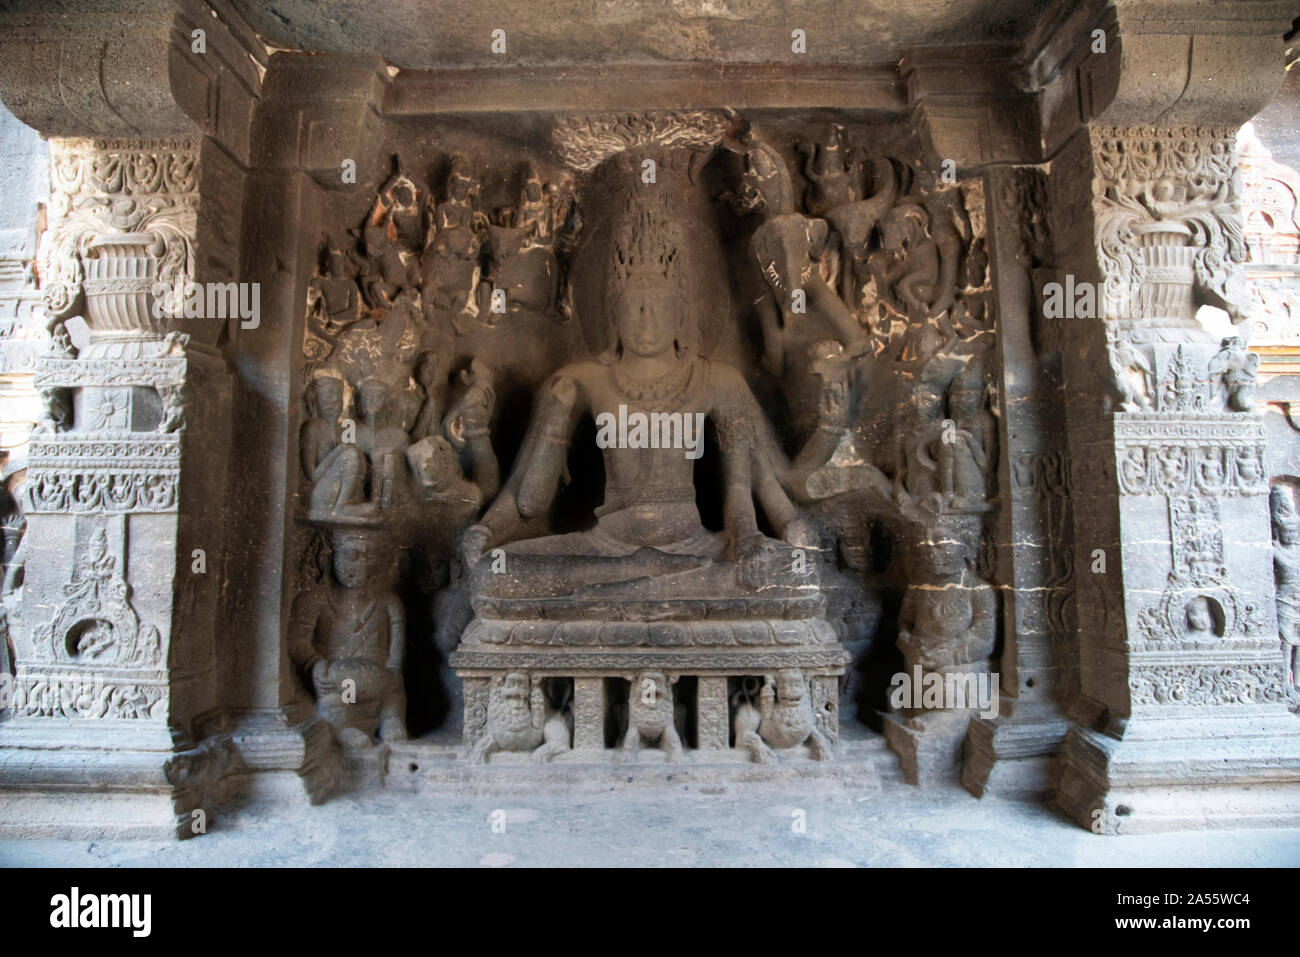 Cave 16 : immense statue du dieu Shiva sculpté dans la pierre, Kailasnatha Temple, les grottes d'Ellora à Aurangabad, Maharashtra, Inde Banque D'Images